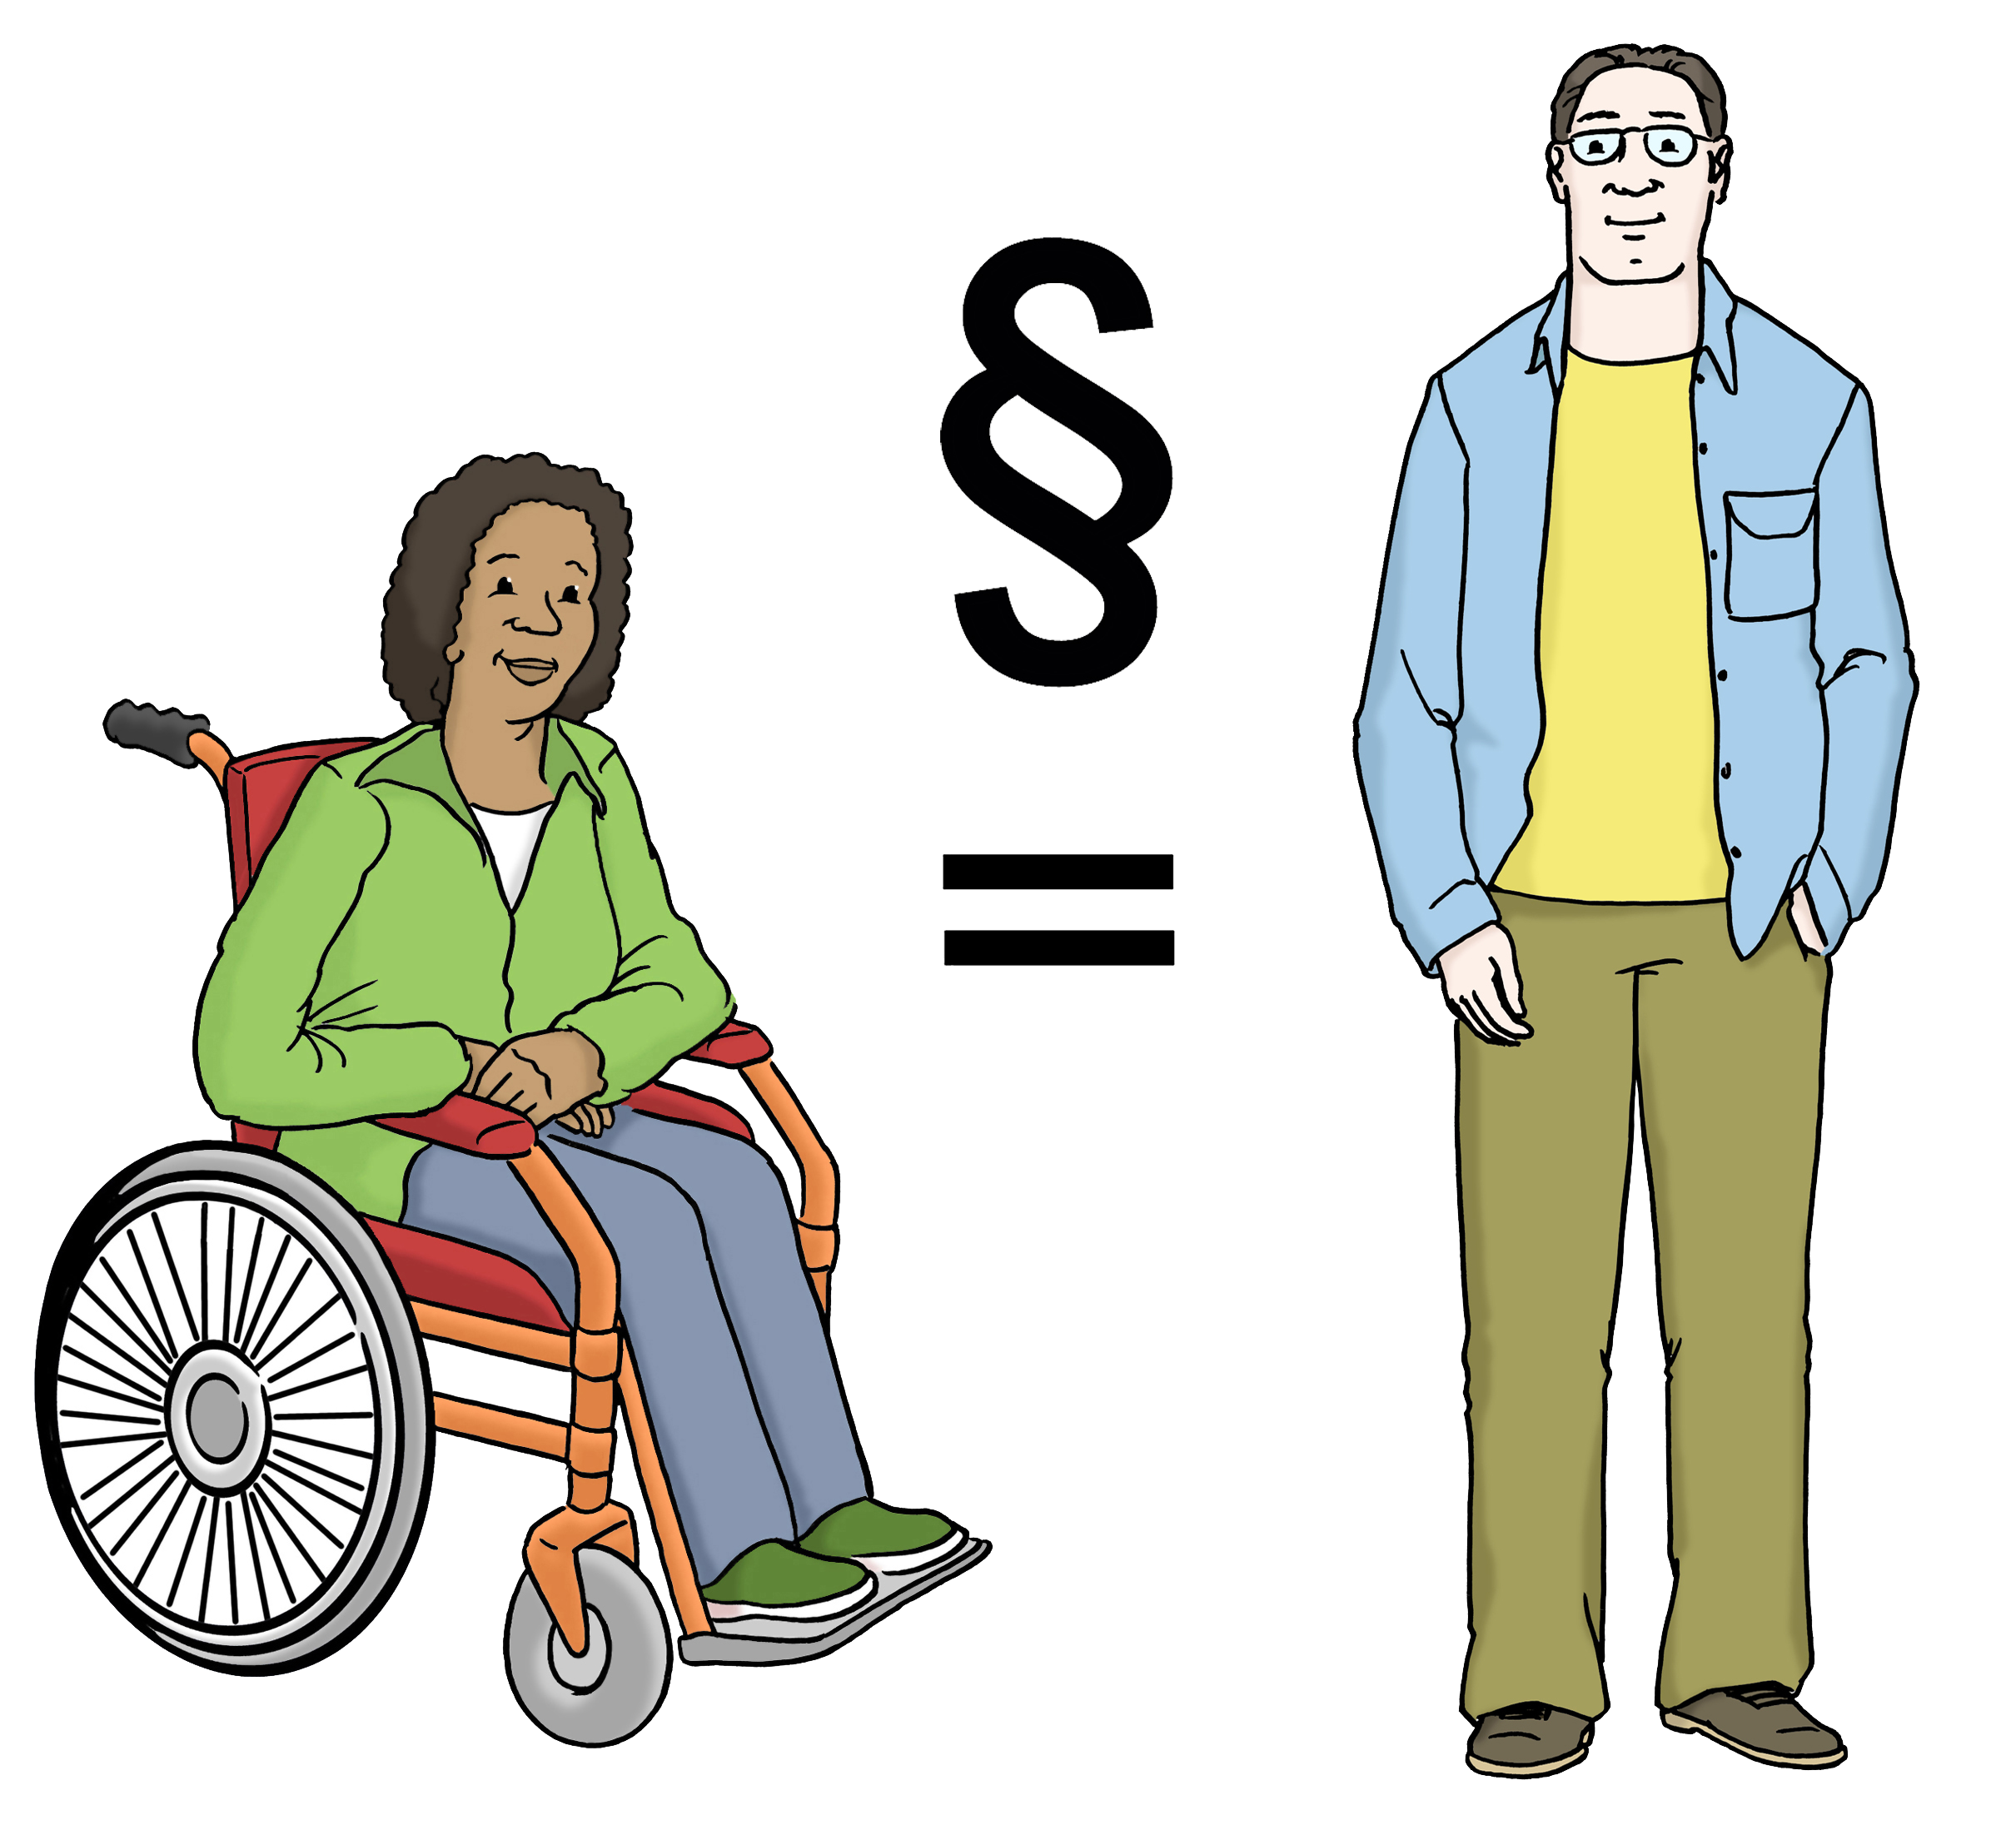 Menschen mit und ohne Behinderung sind gleichberechtigt